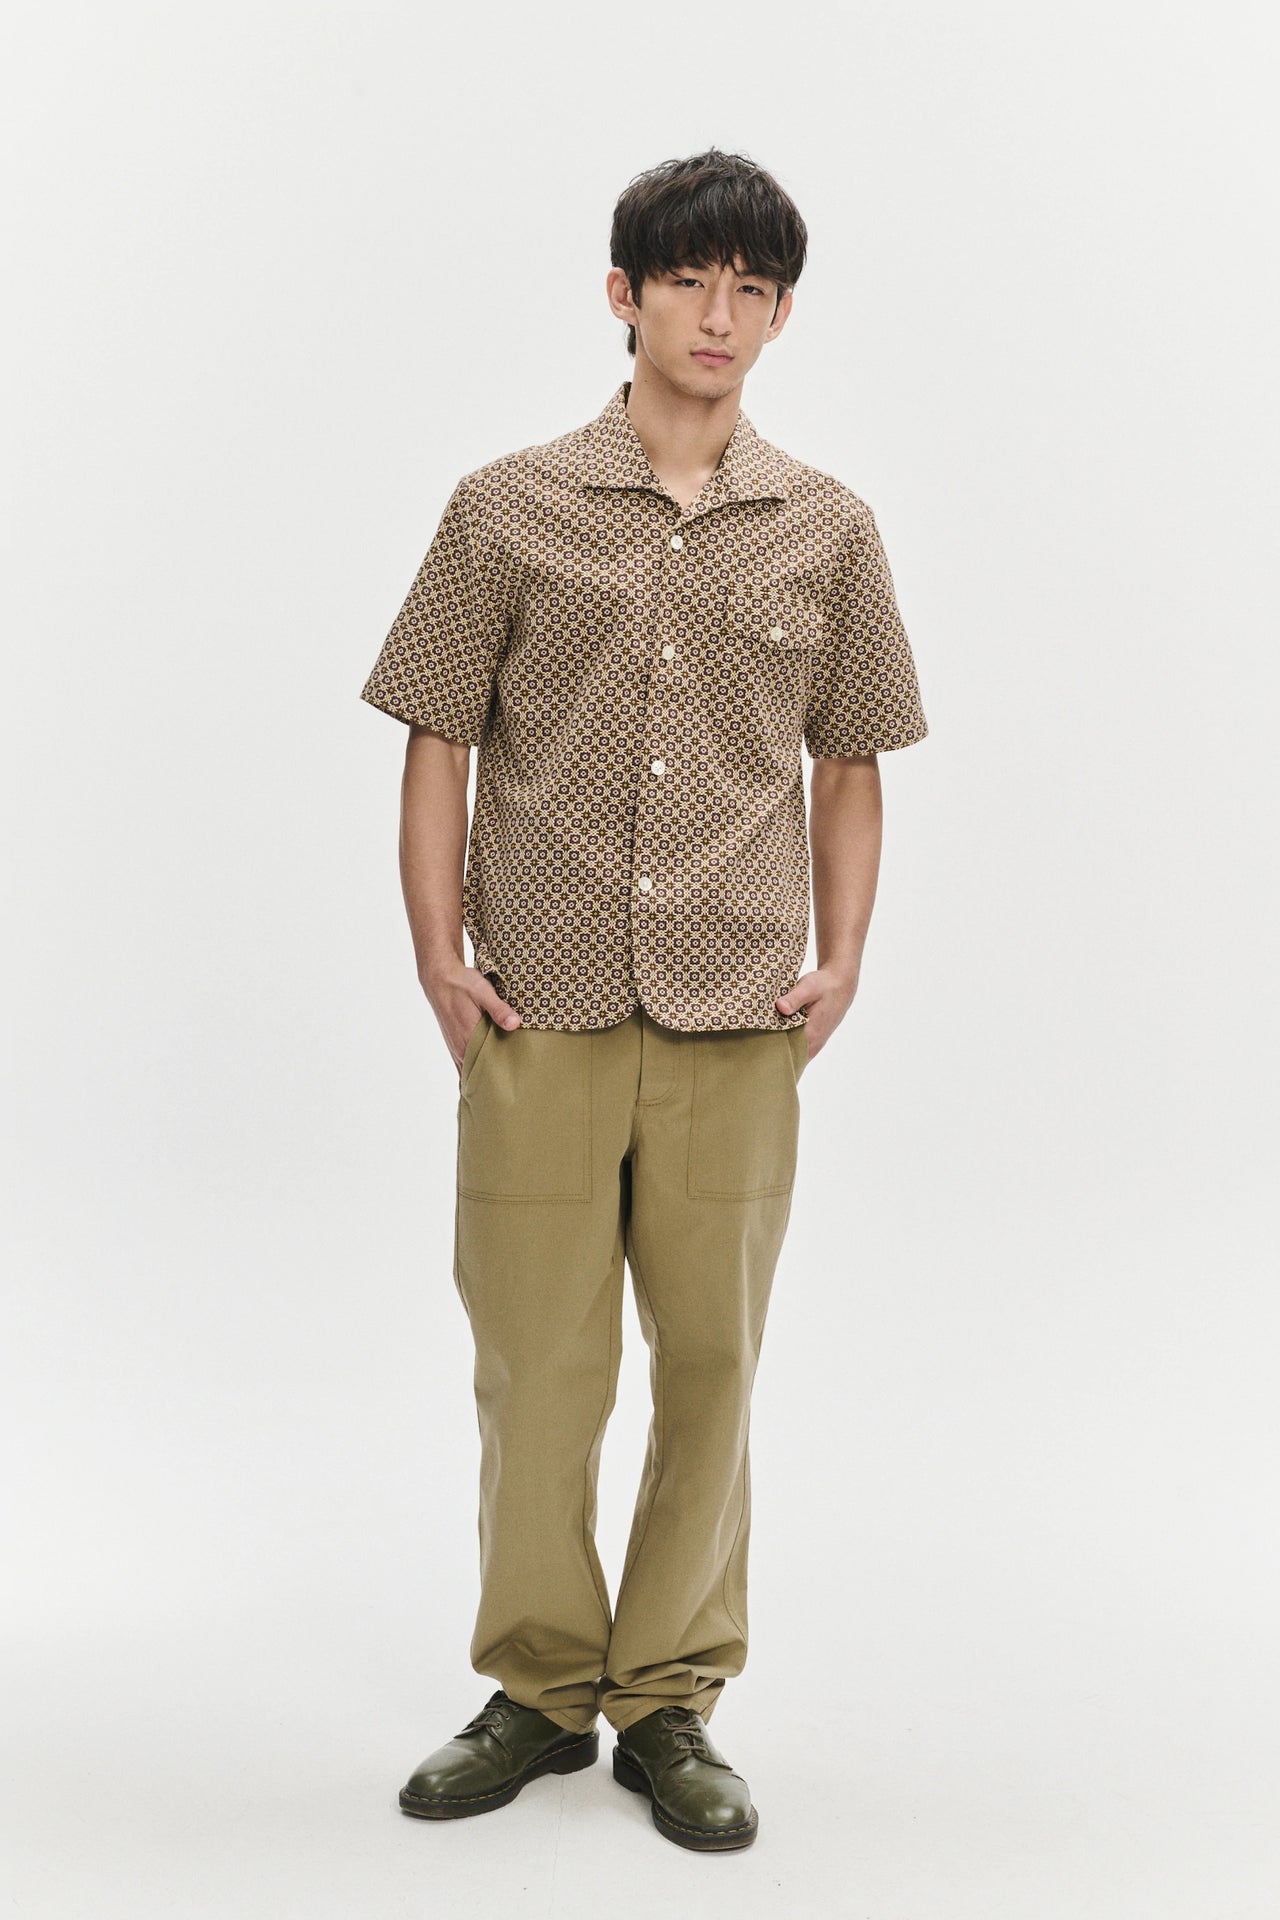 ブラウンとイエローのポルトガル製ジャカード織コットン製半袖リラックススプレッドカラーシャツ